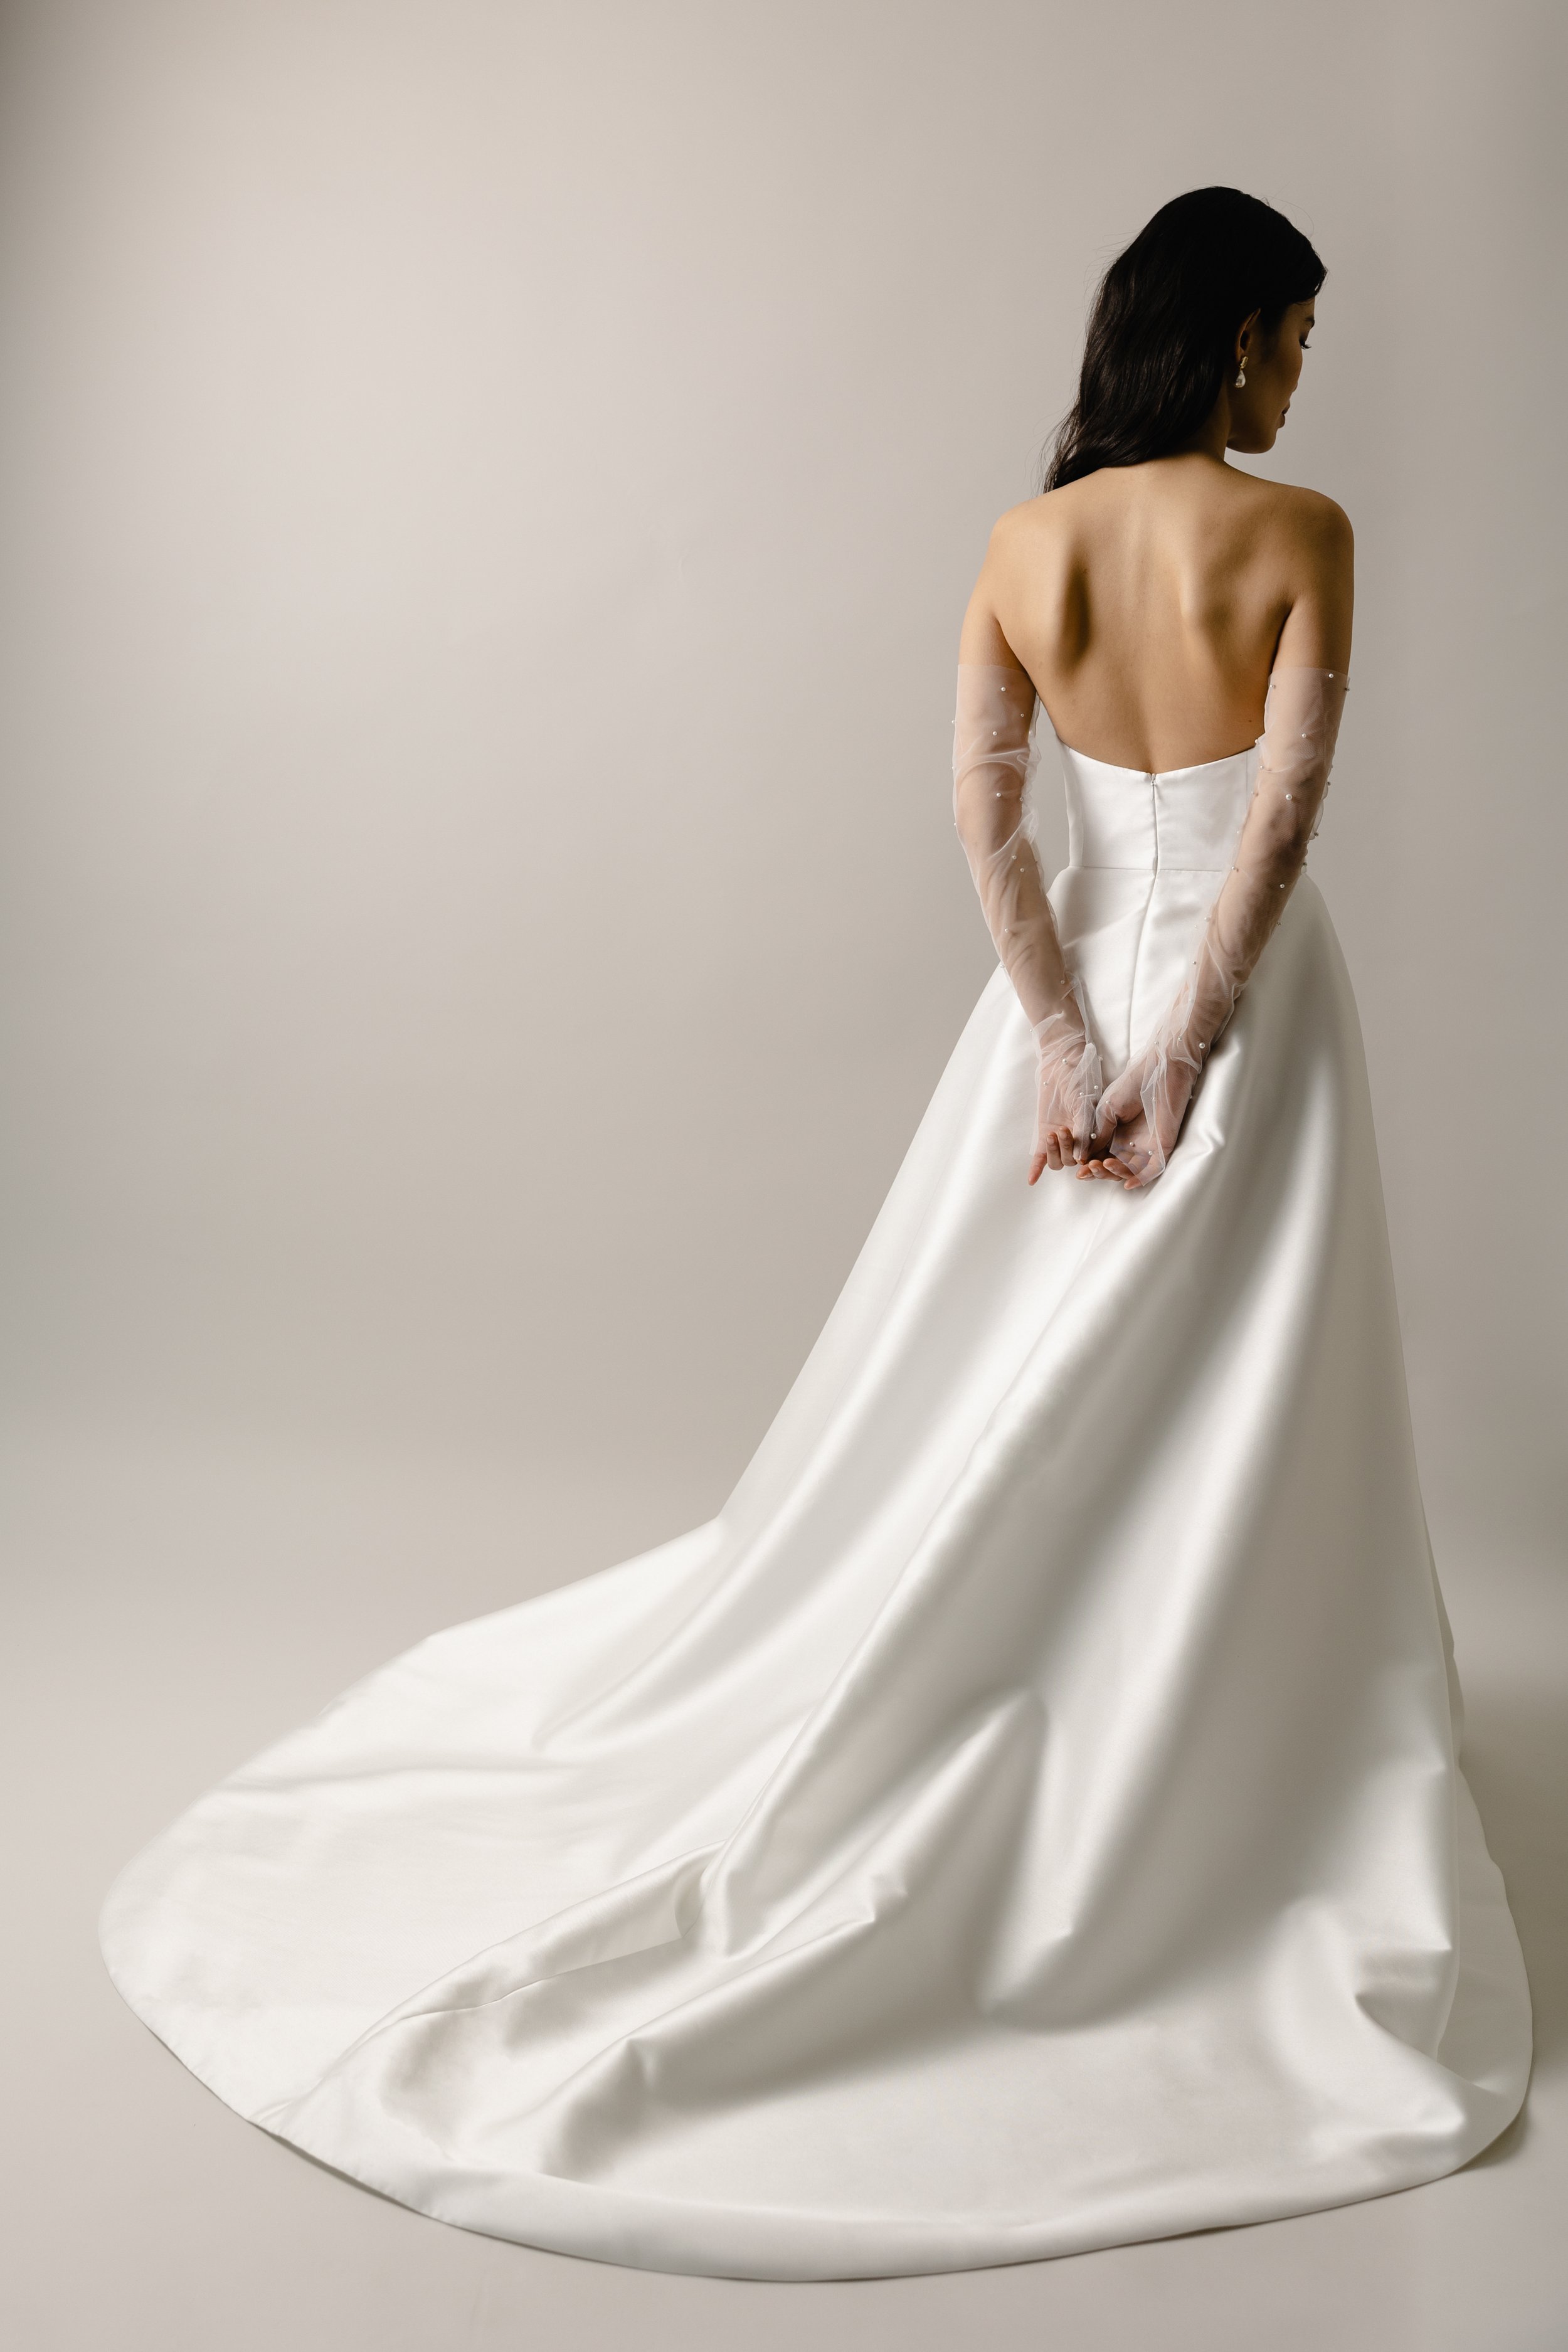 Wyatt cateye bodice wedding dress with slit4.jpg